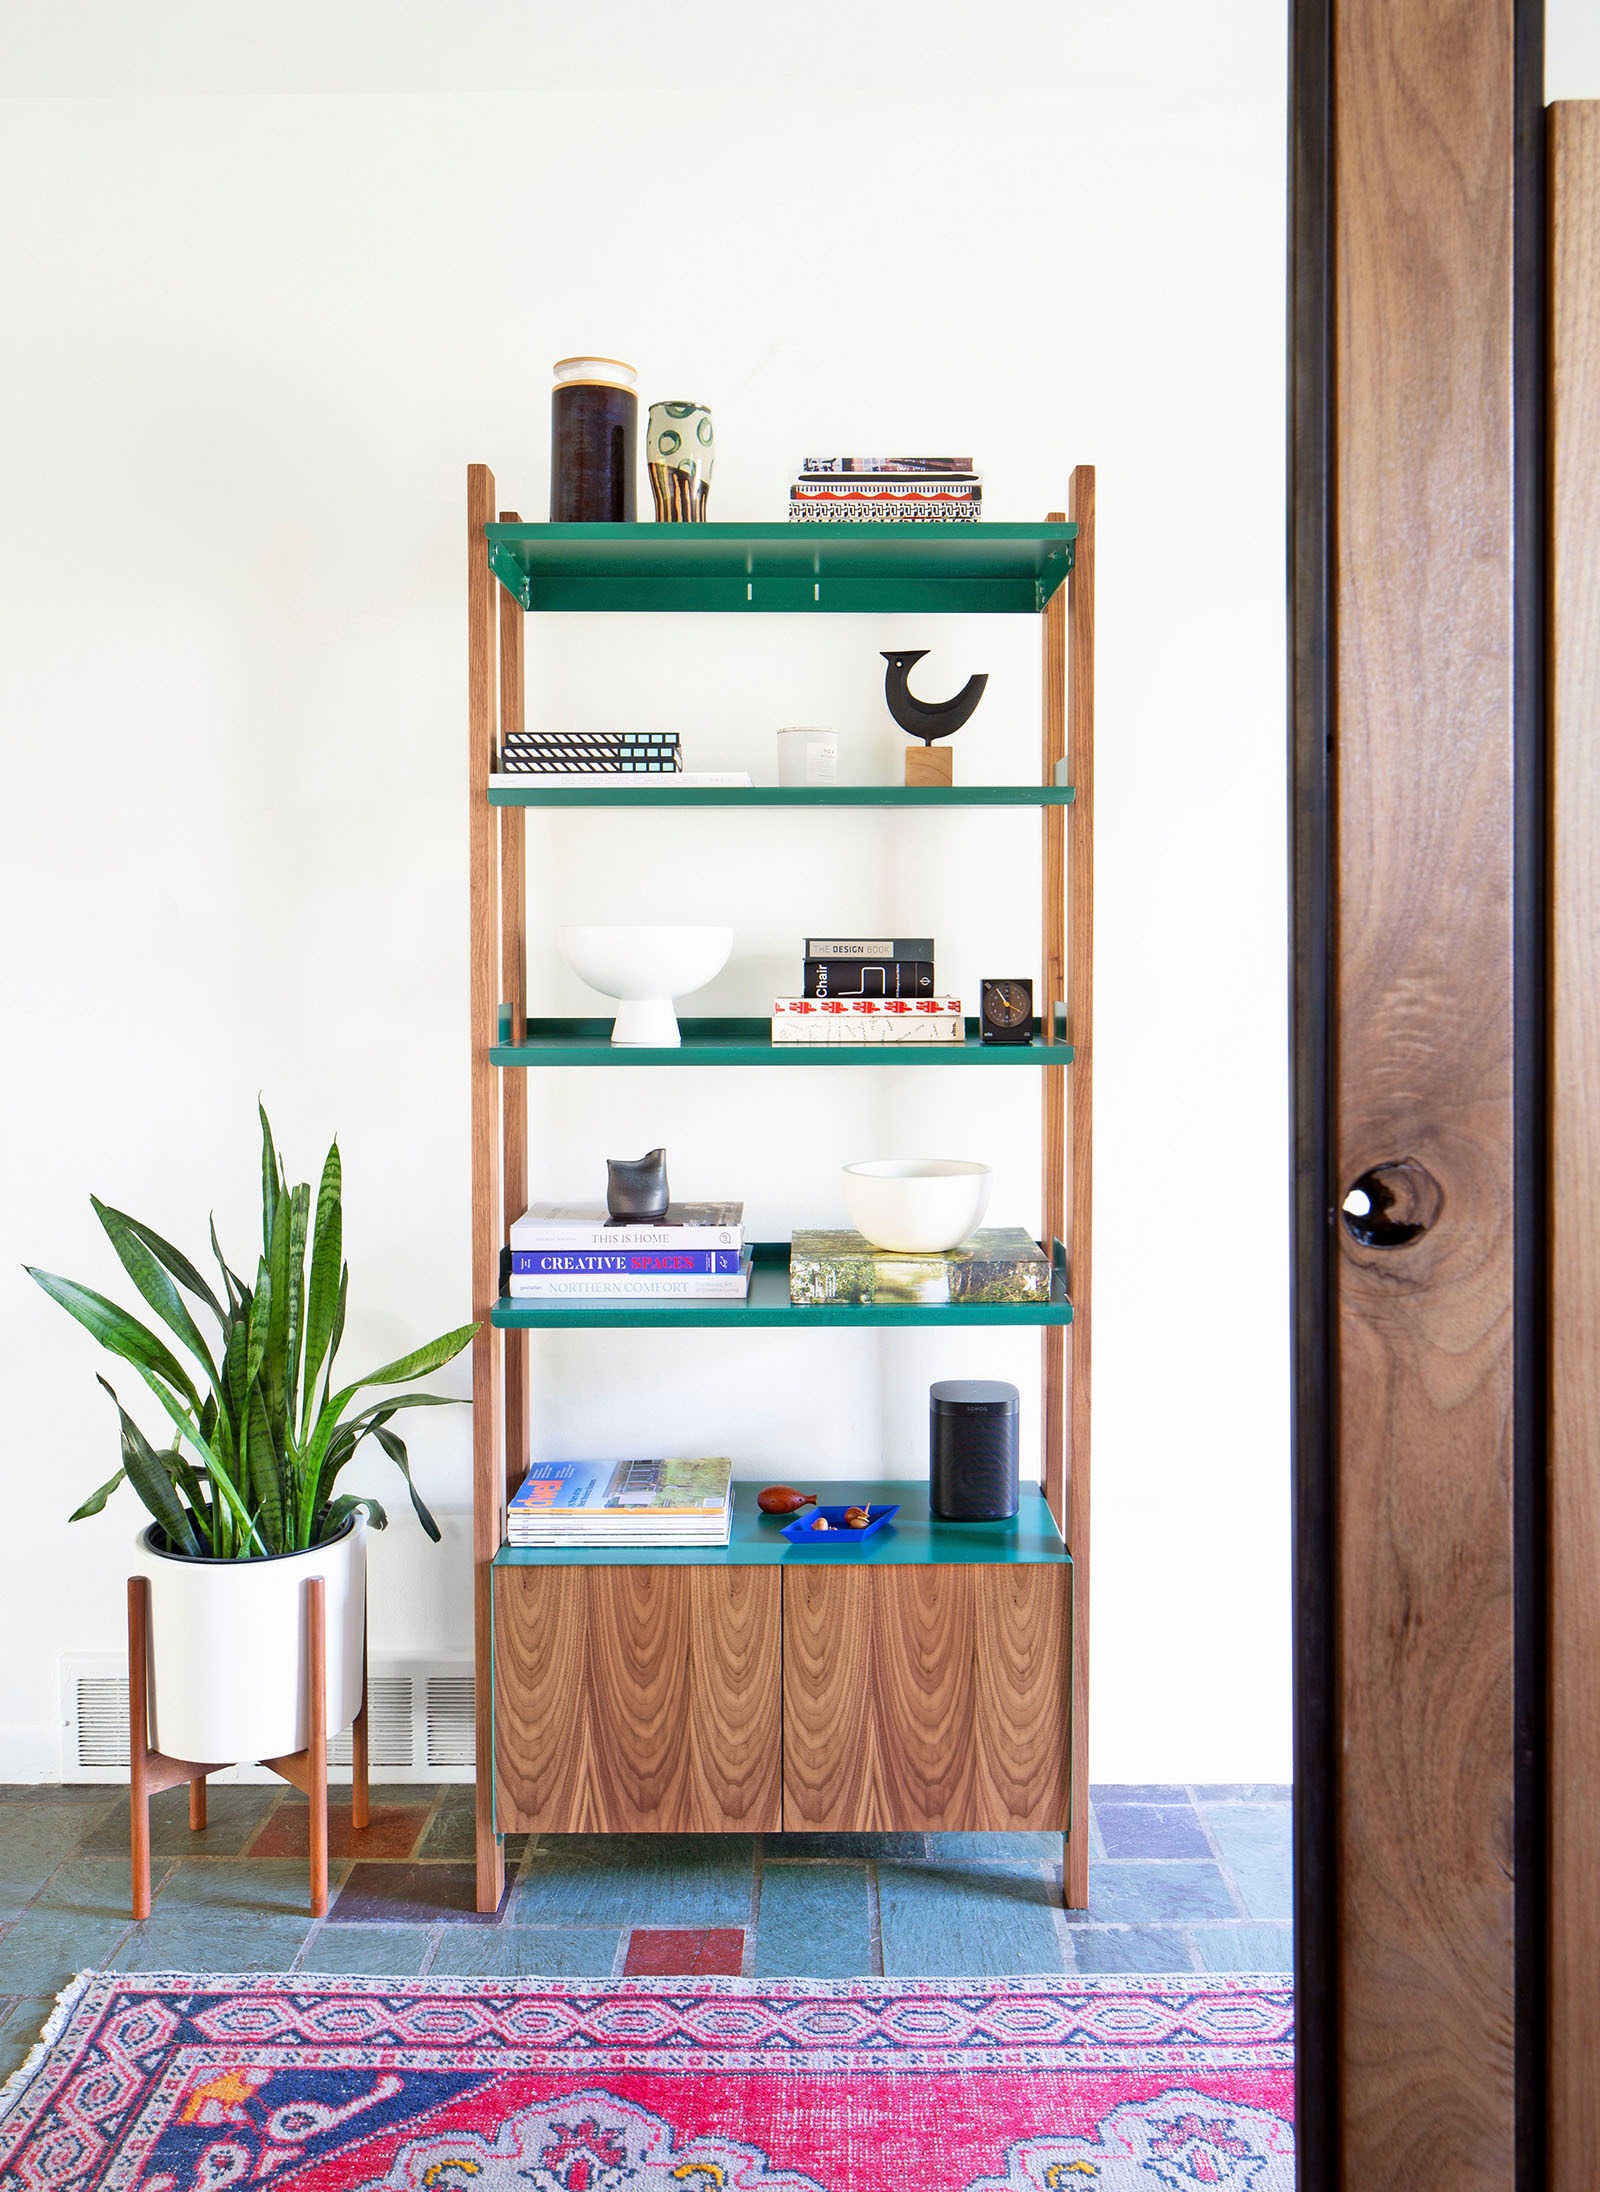 Floyd Shelving System  Modern Living & Dining Room Shelves